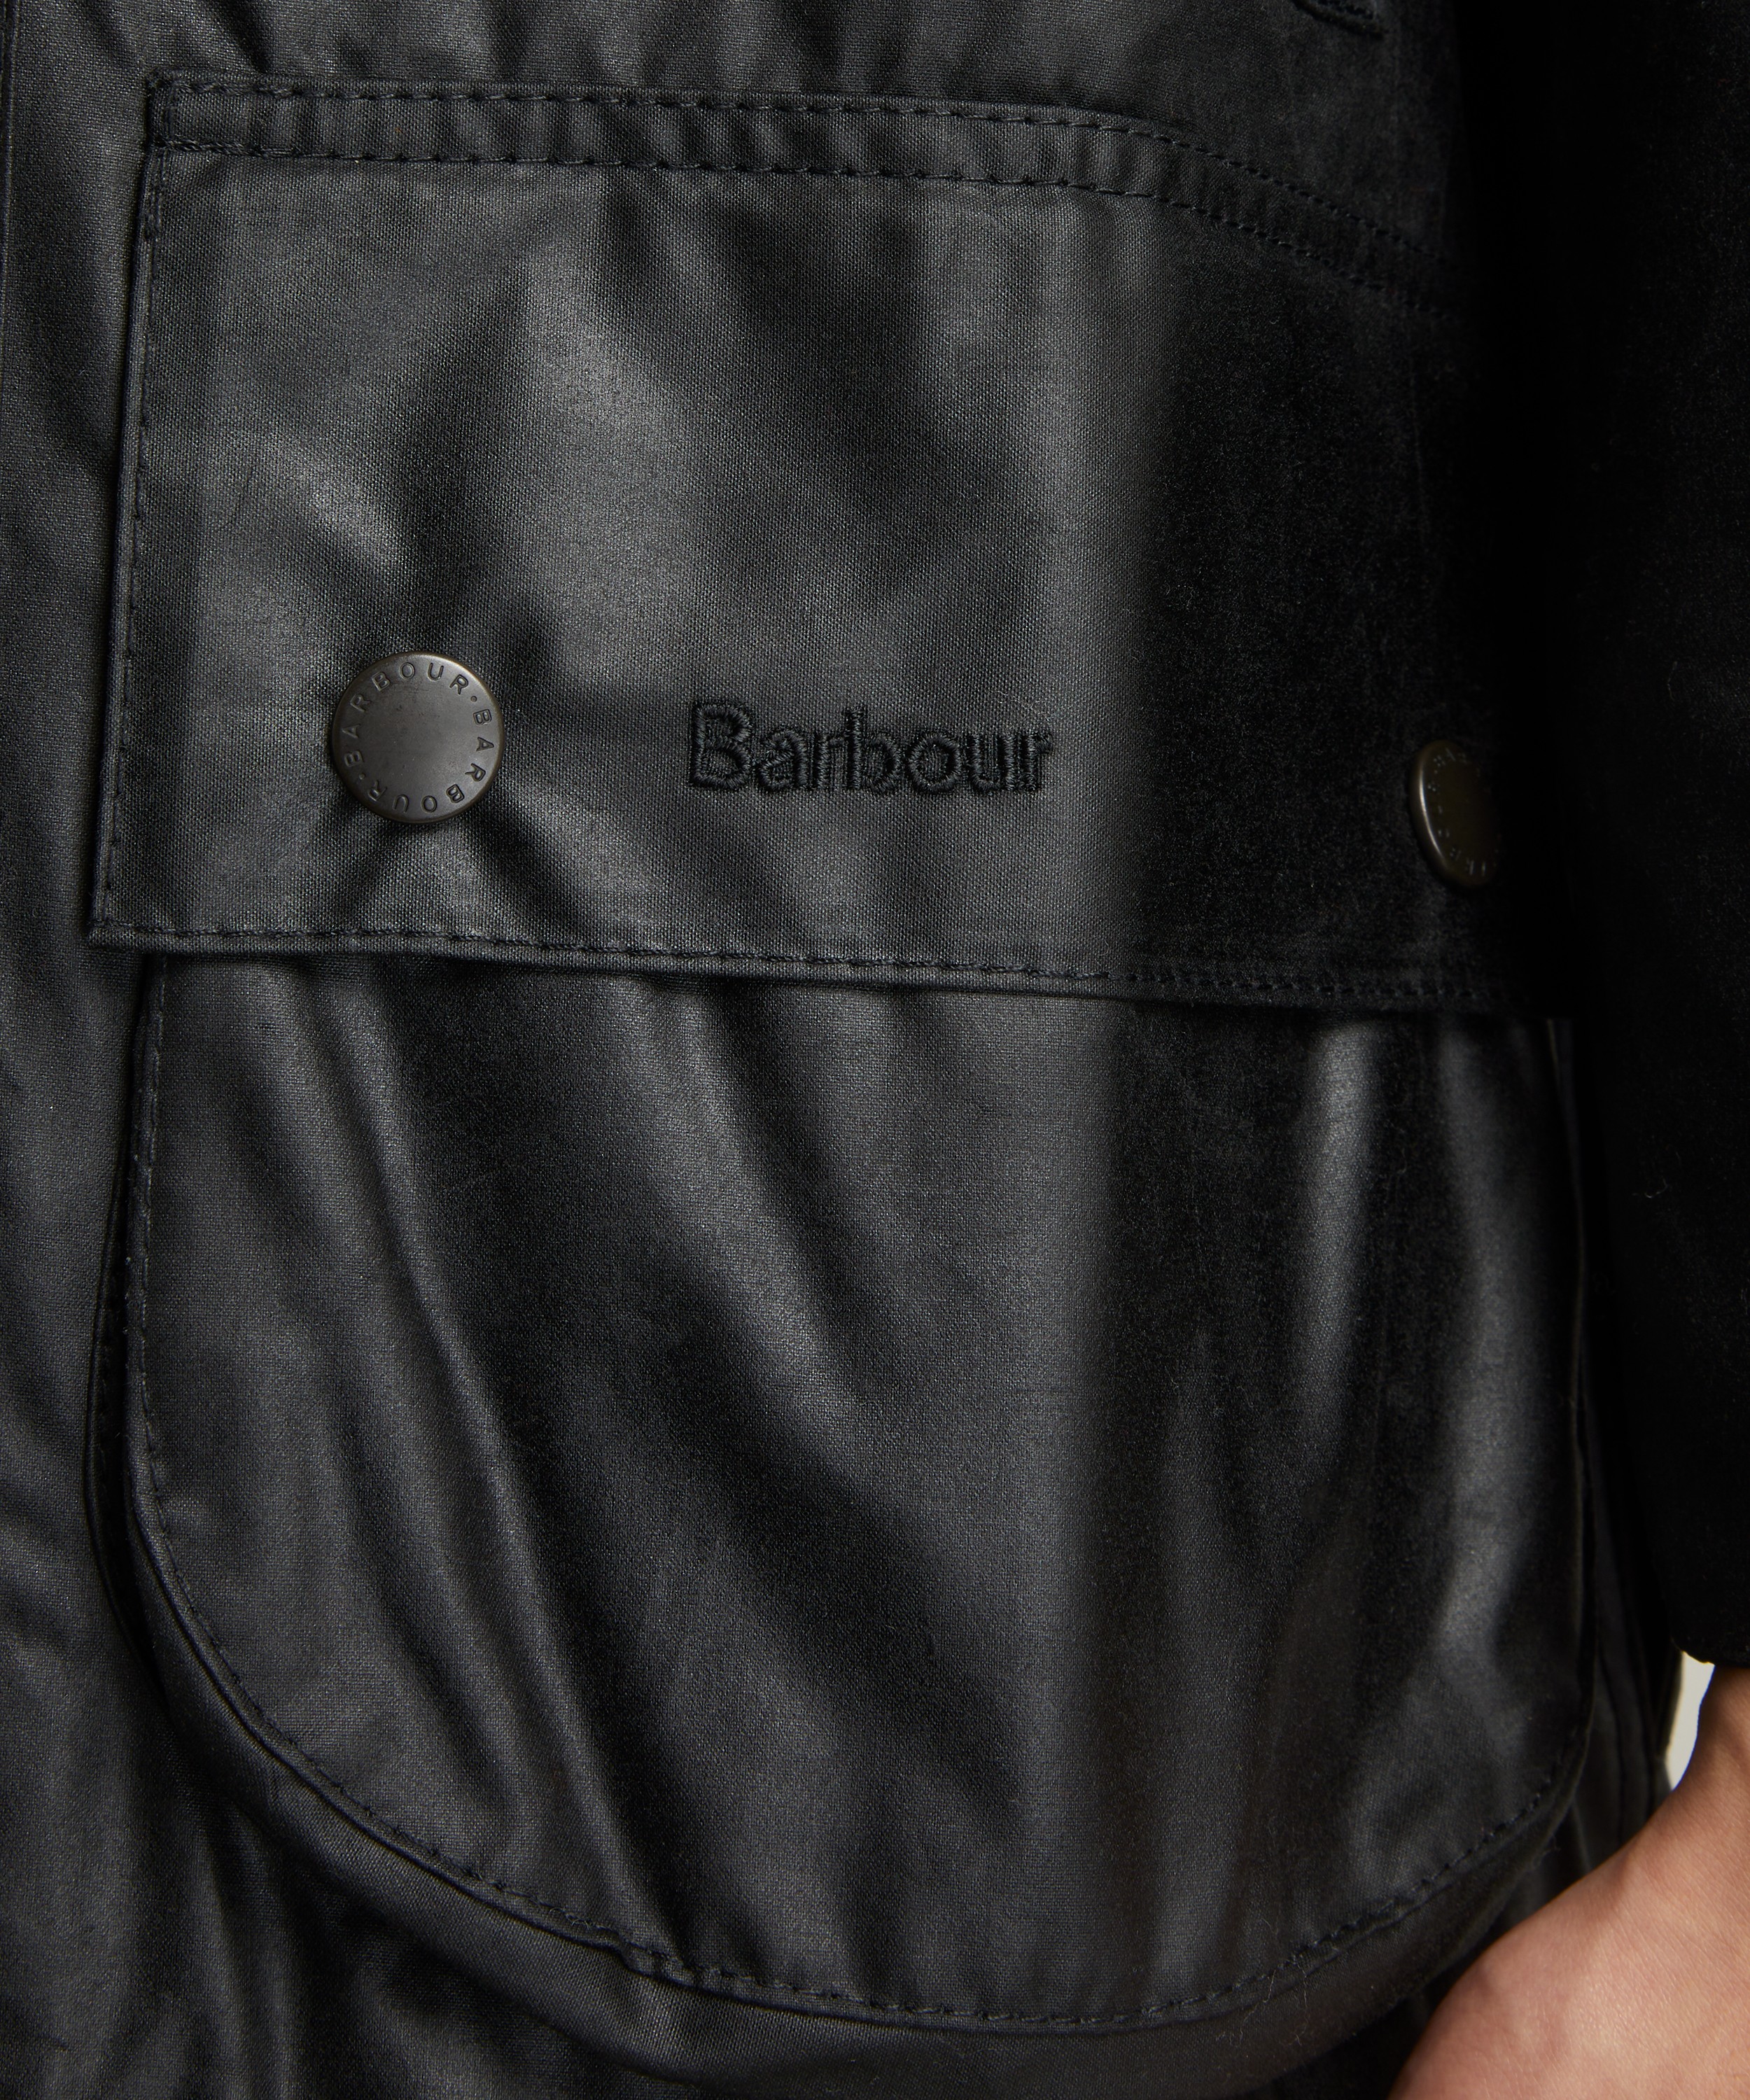 Beaufort Wax Jacket - Barbour 38 / Black